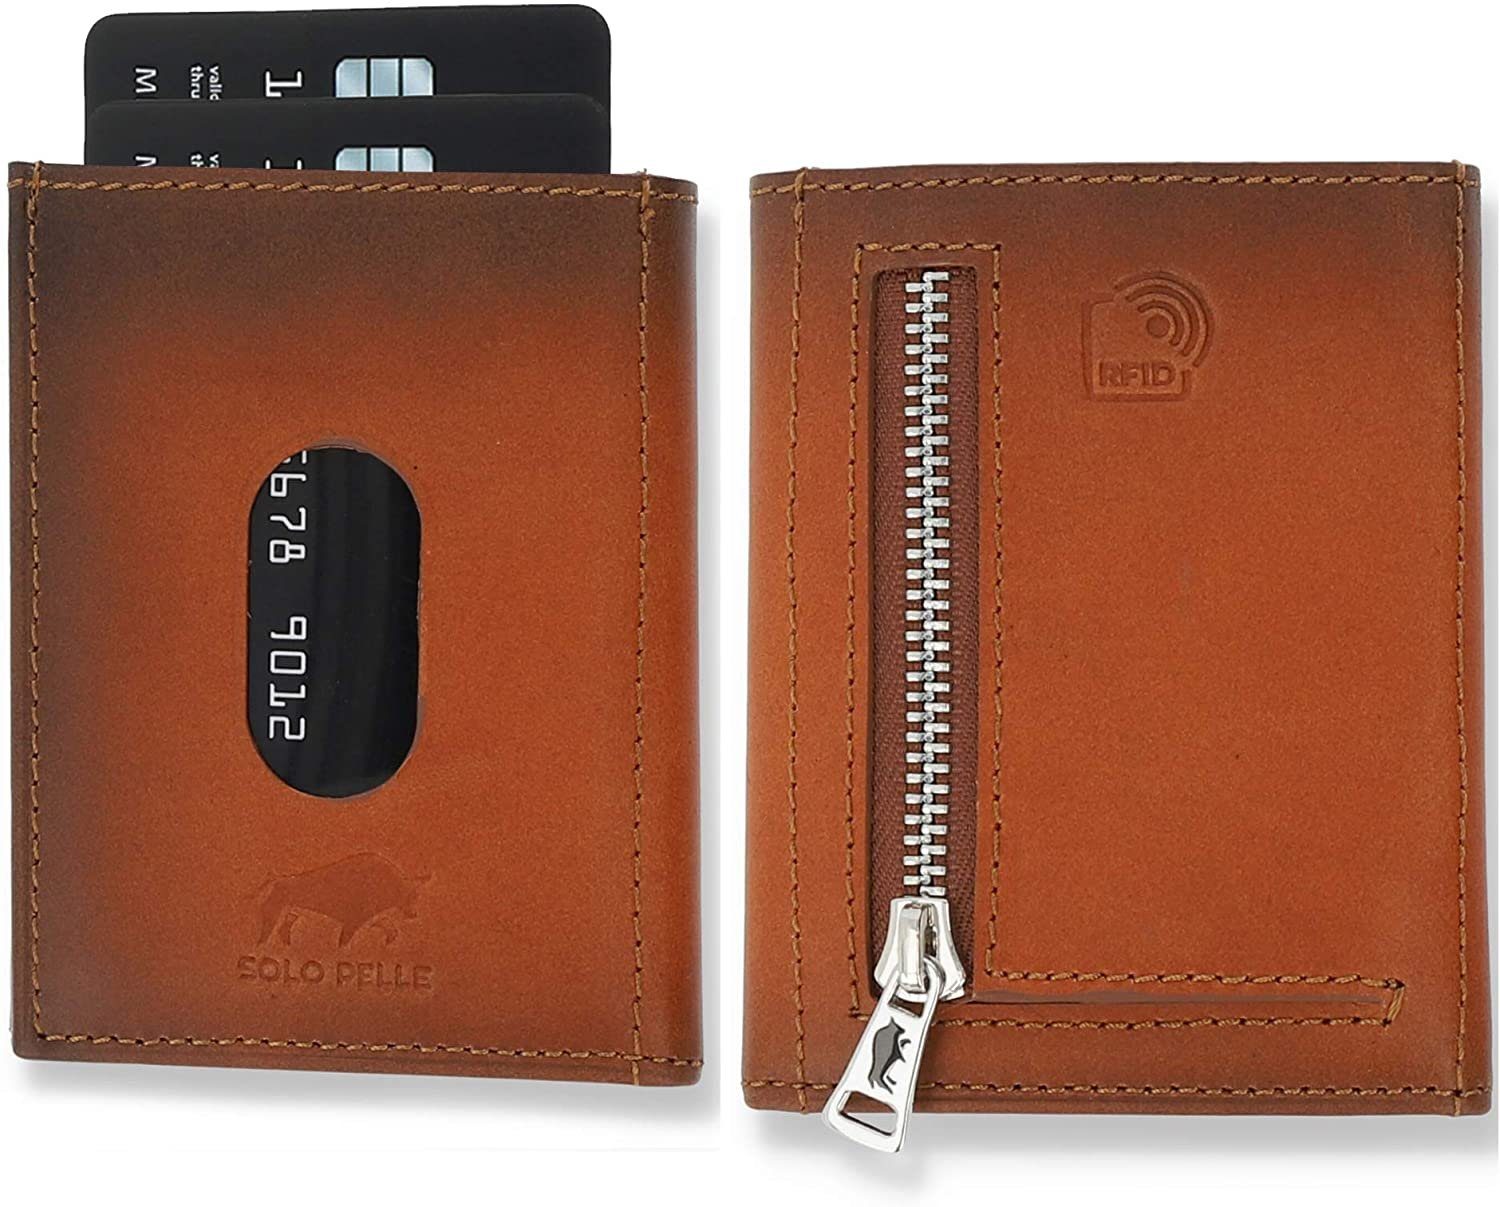 Solo Pelle Brieftasche Slim Wallet mit Münzfach [12 Karten] Slimwallet Riga [RFID-Schutz], echt Leder, RFID Schutz, Macde in Europe Cognac Braun